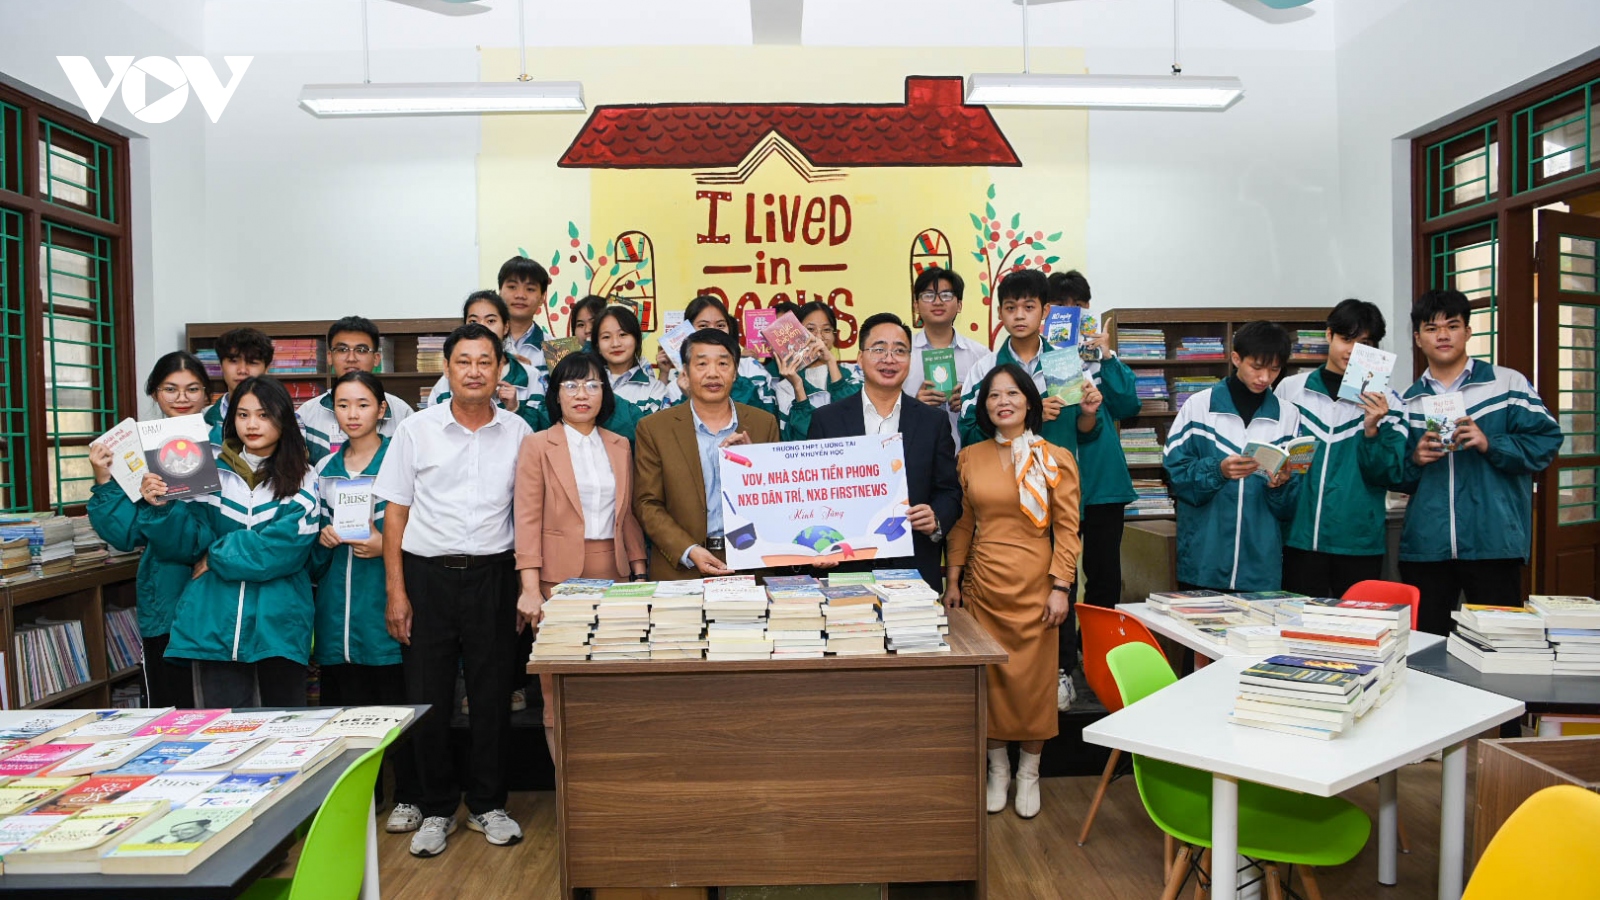 VOV cùng các nhà hảo tâm tặng sách cho 2 trường học tại Bắc Ninh